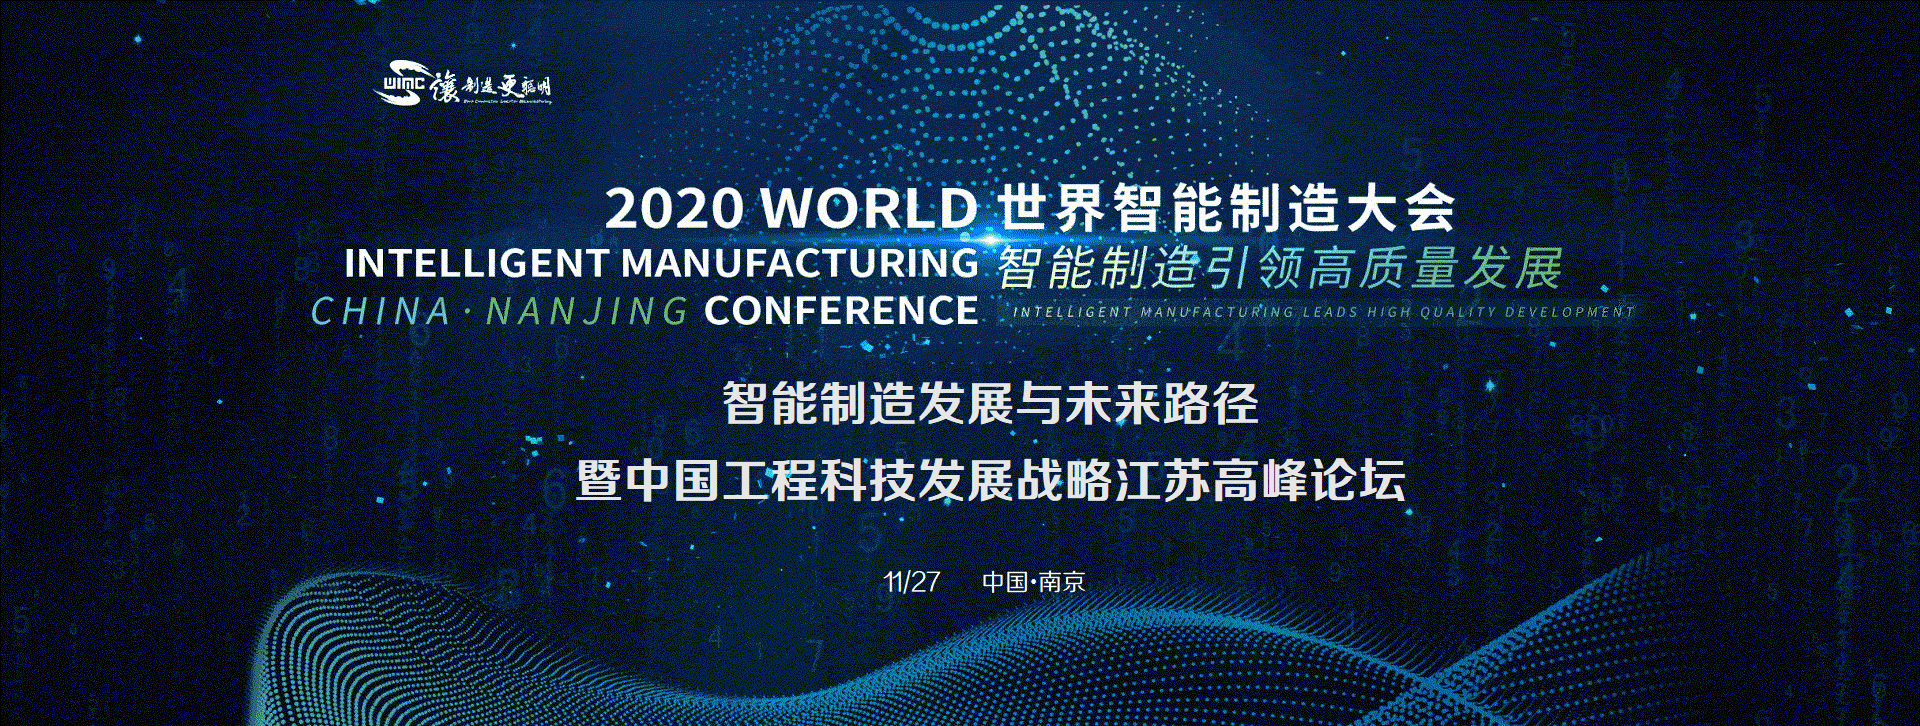 分论坛二：智能制造发展与未来路径暨中国工程科技发展战略江苏高峰论坛